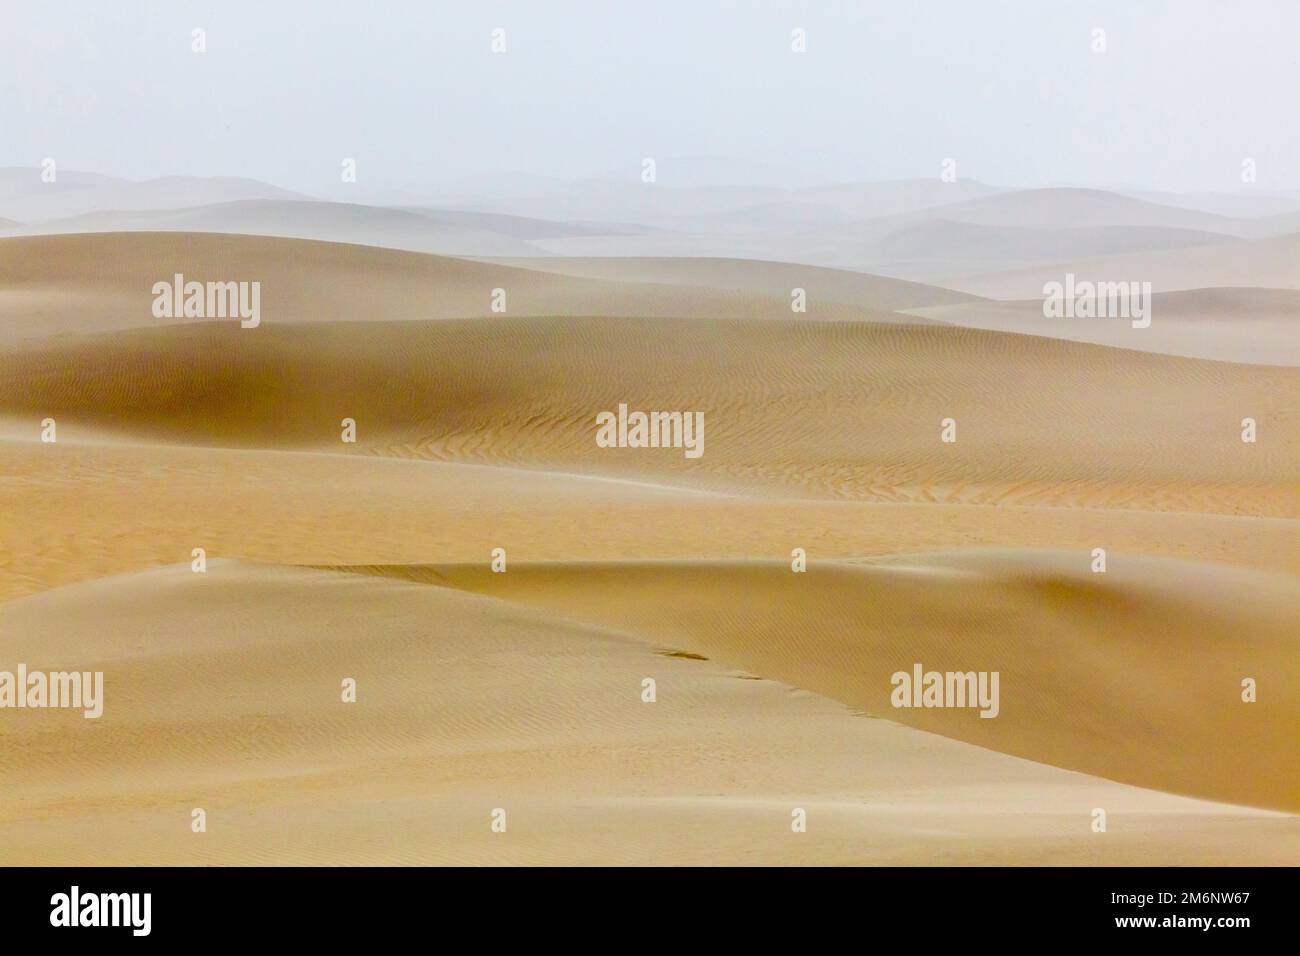 Sables mouvants du désert de Taklamakan dans le brouillard. Bassin de Tarim. Région autonome du Xinjiang (Sinkiang). Chine. Banque D'Images